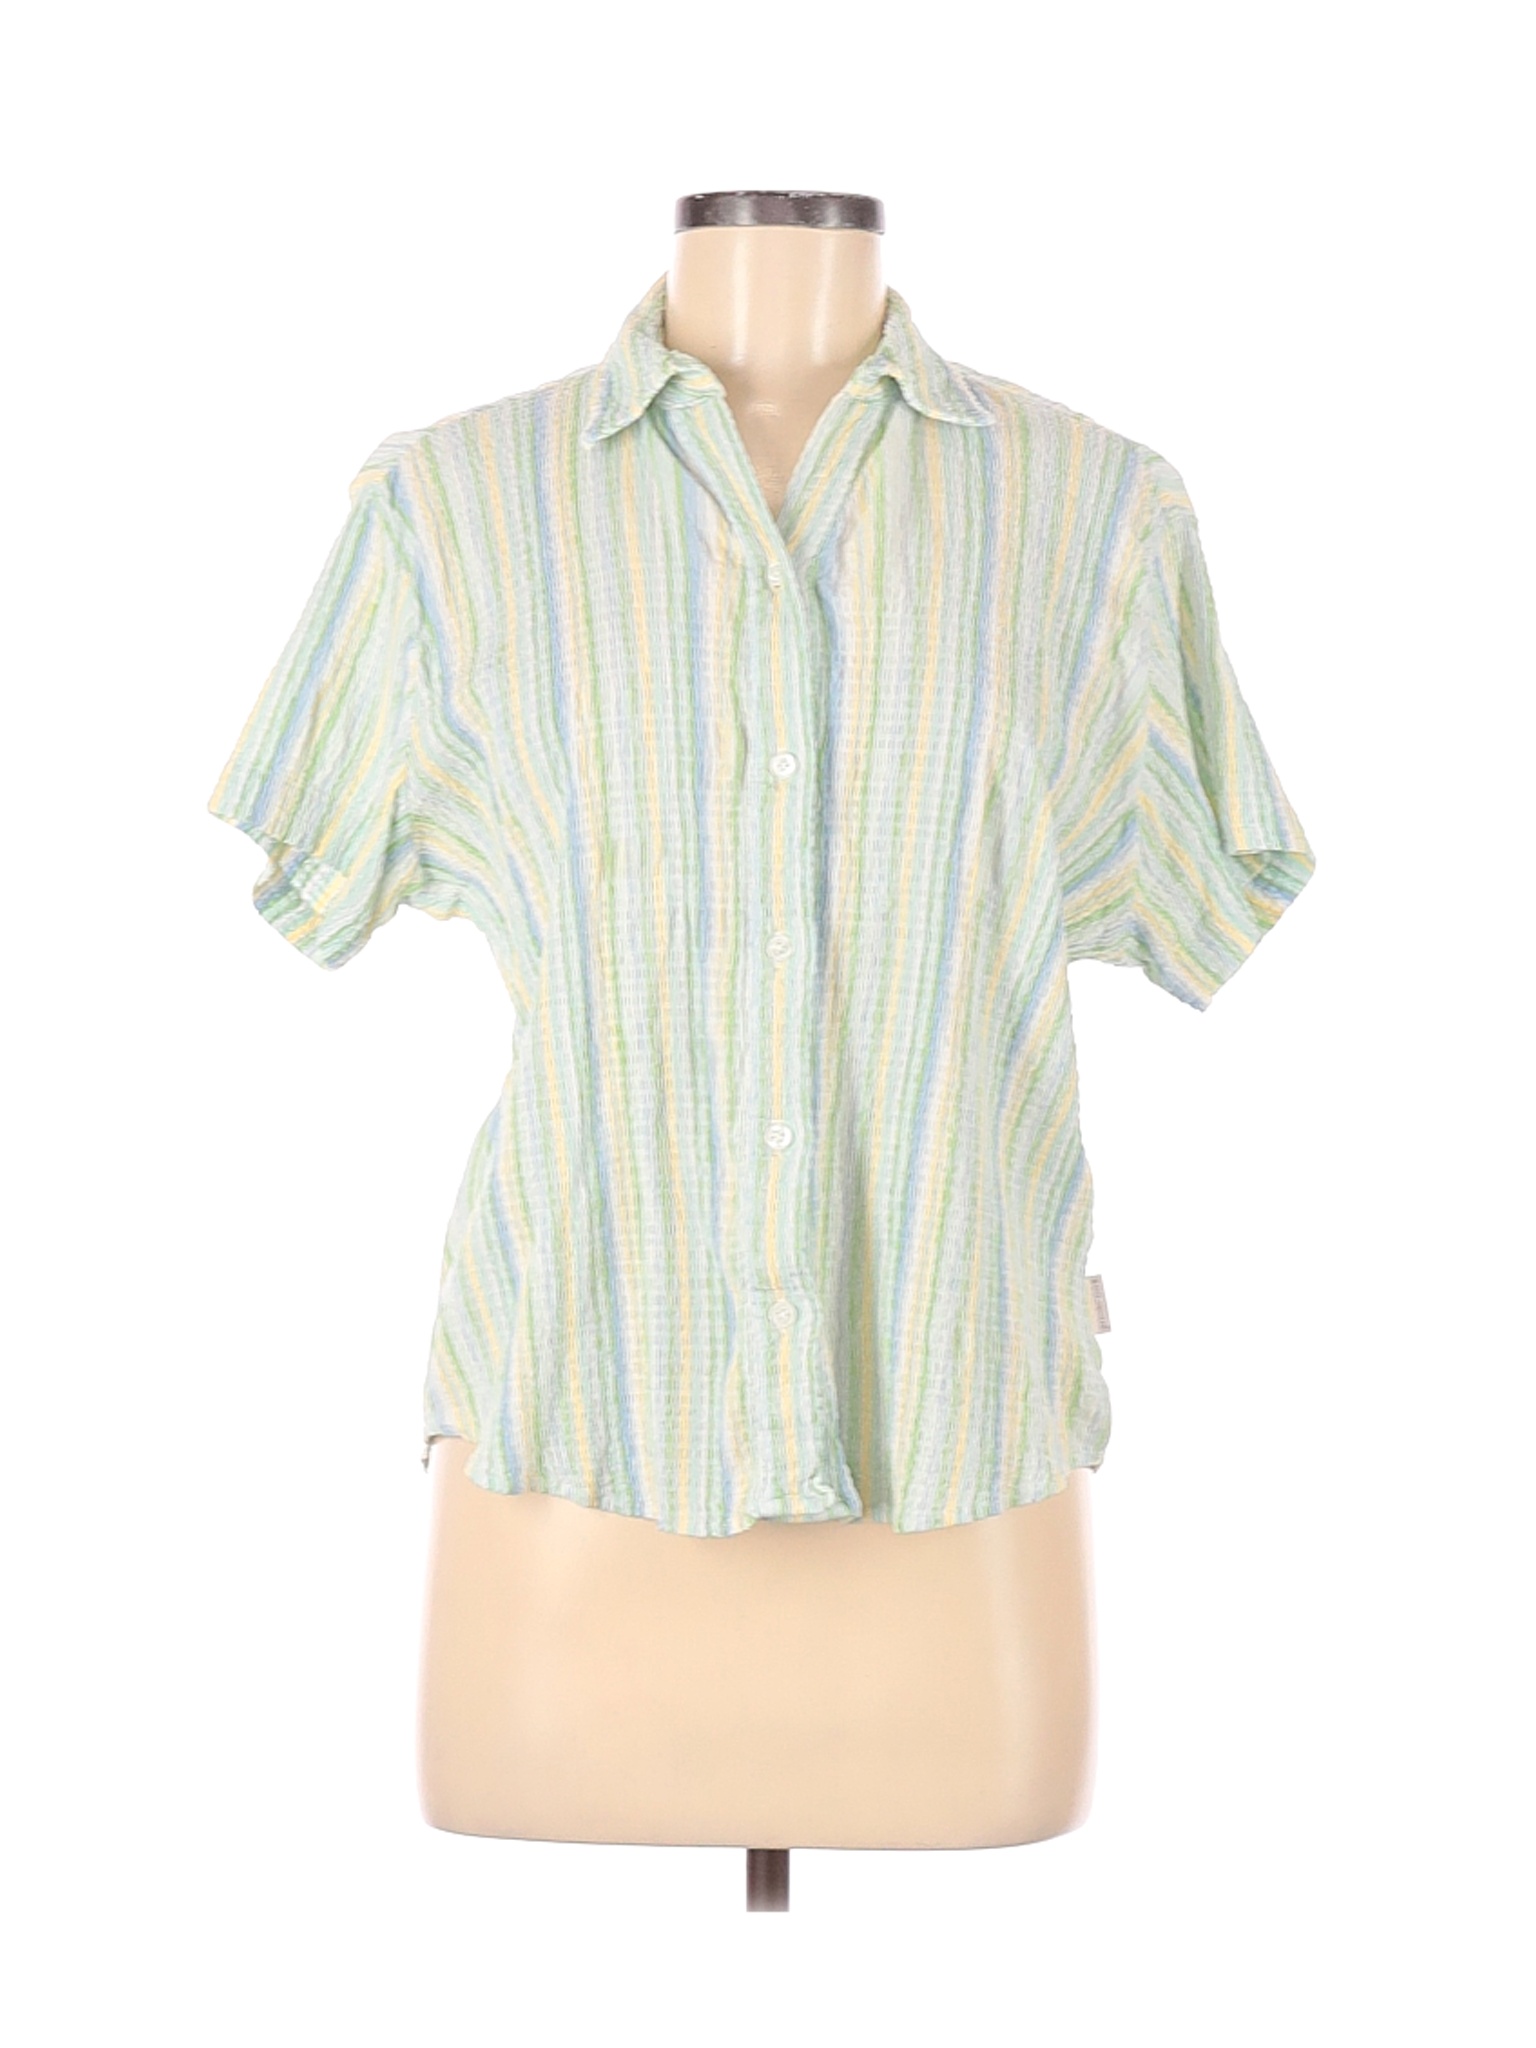 Woolrich Women Green Short Sleeve Button-Down Shirt M | eBay